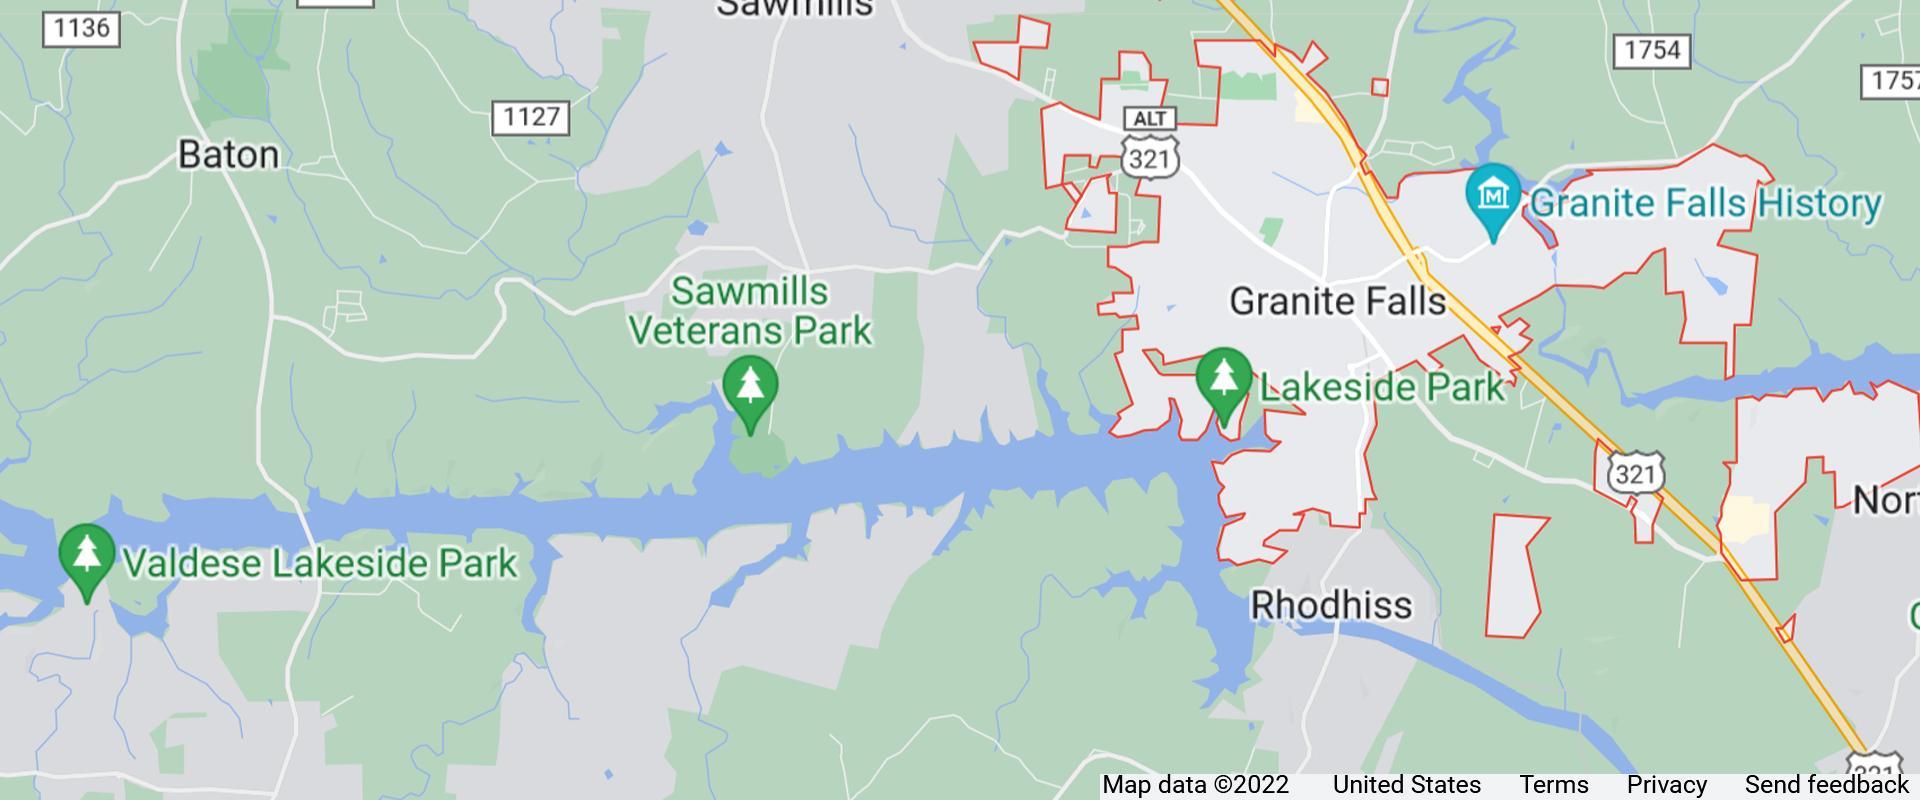 map of granite falls north carolina